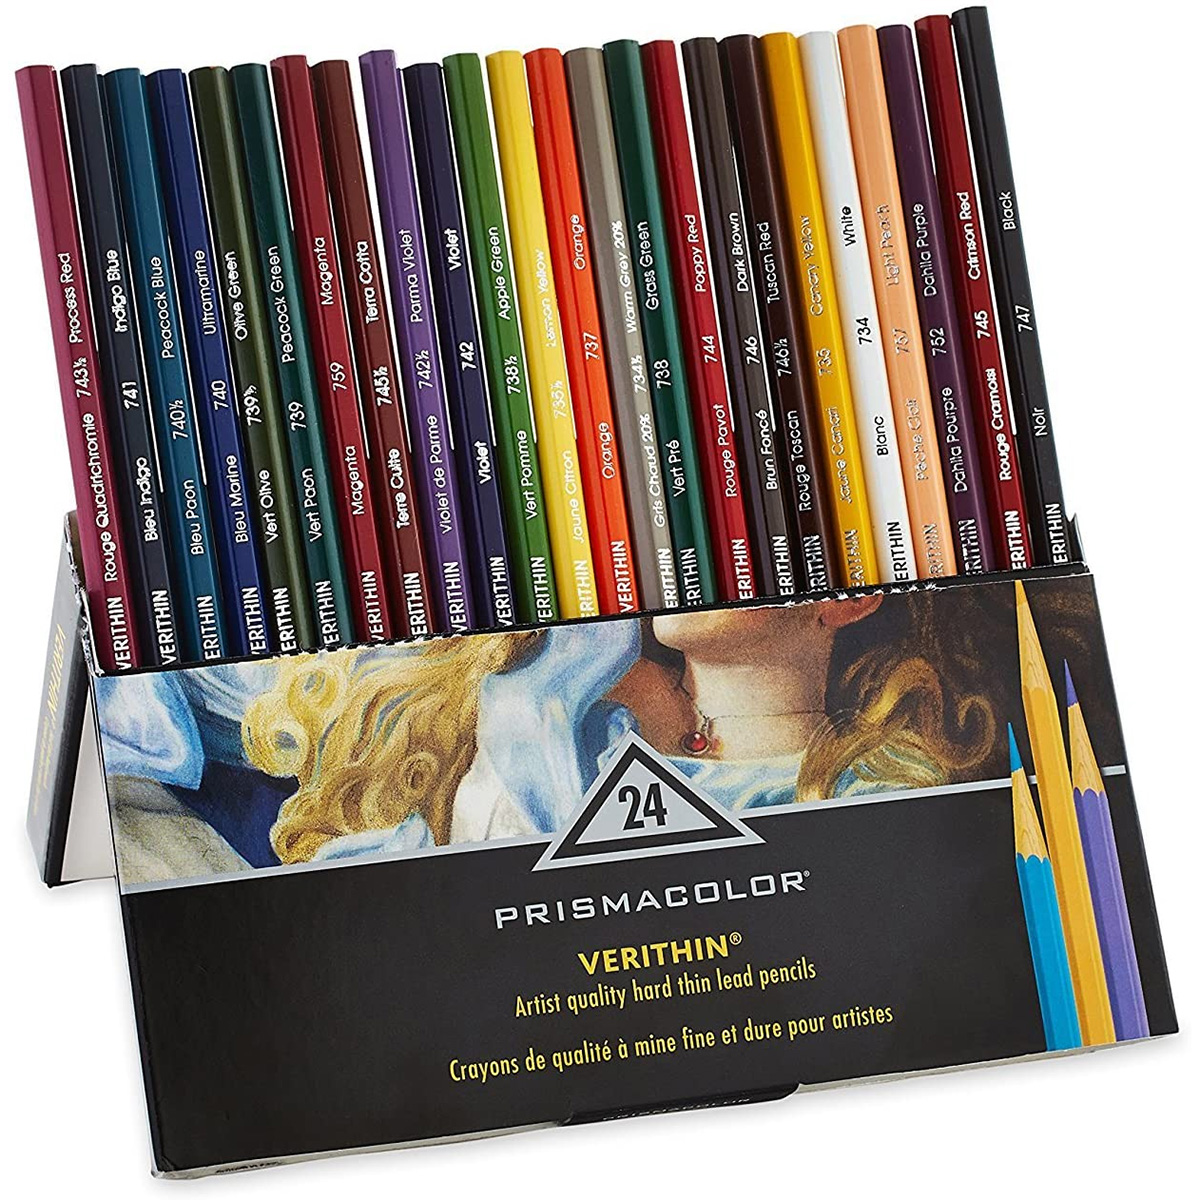 Prismacolor Premier Verithin 36 Colored Pencils Set